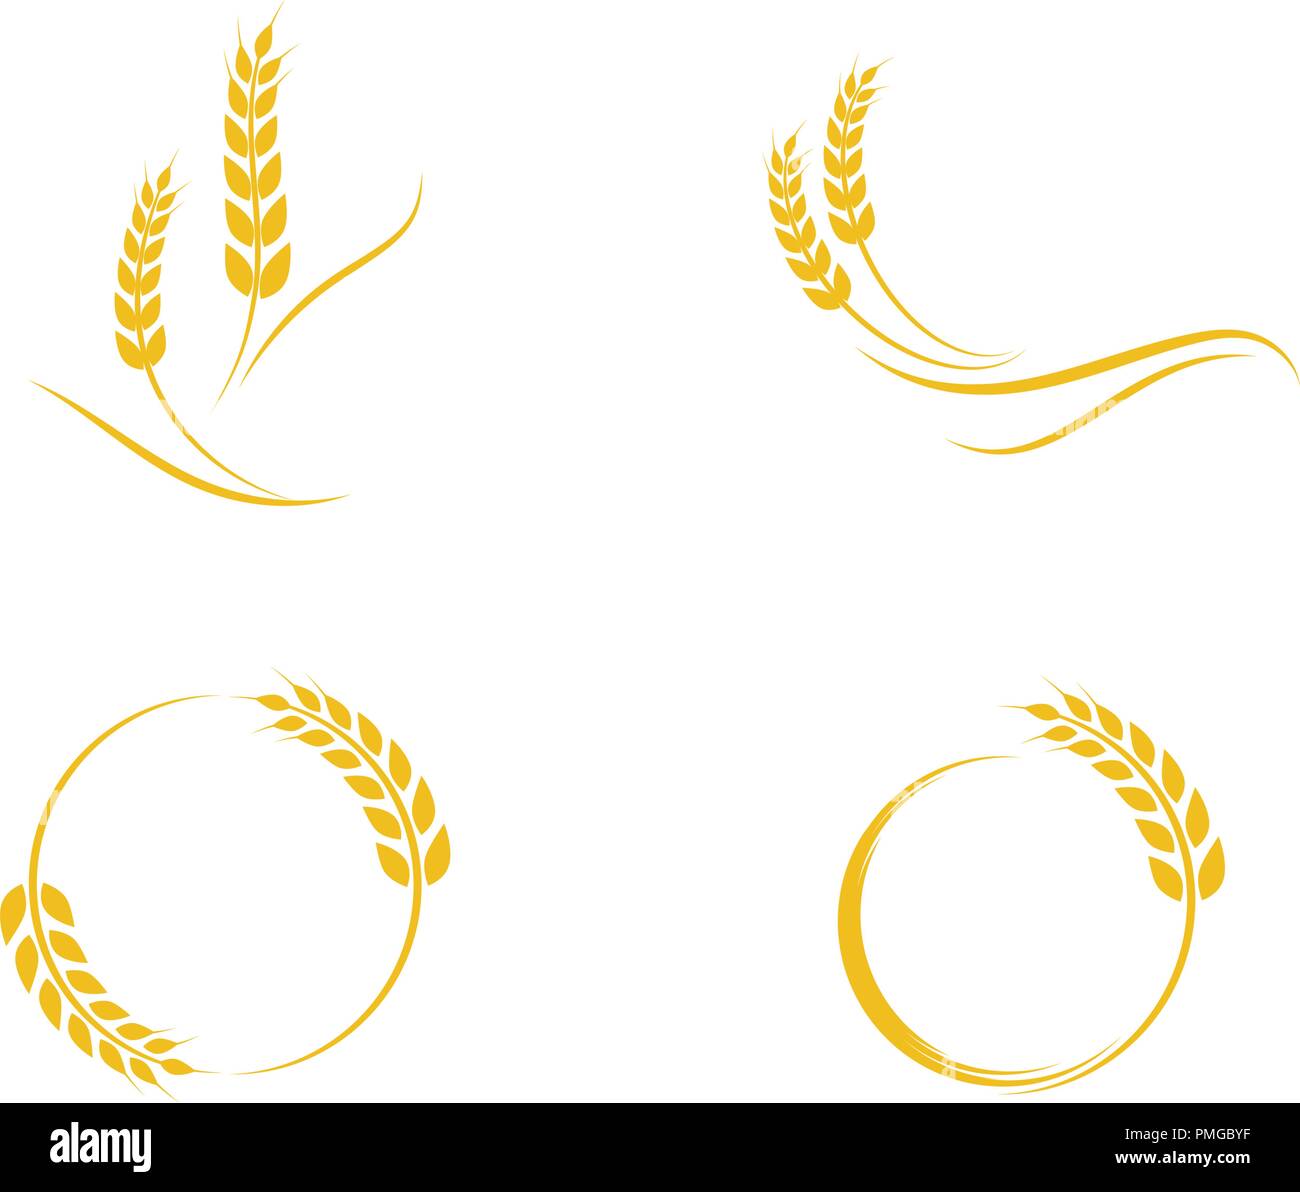 Landwirtschaft Weizen Logo Vorlage vektor Icon Design Stock Vektor